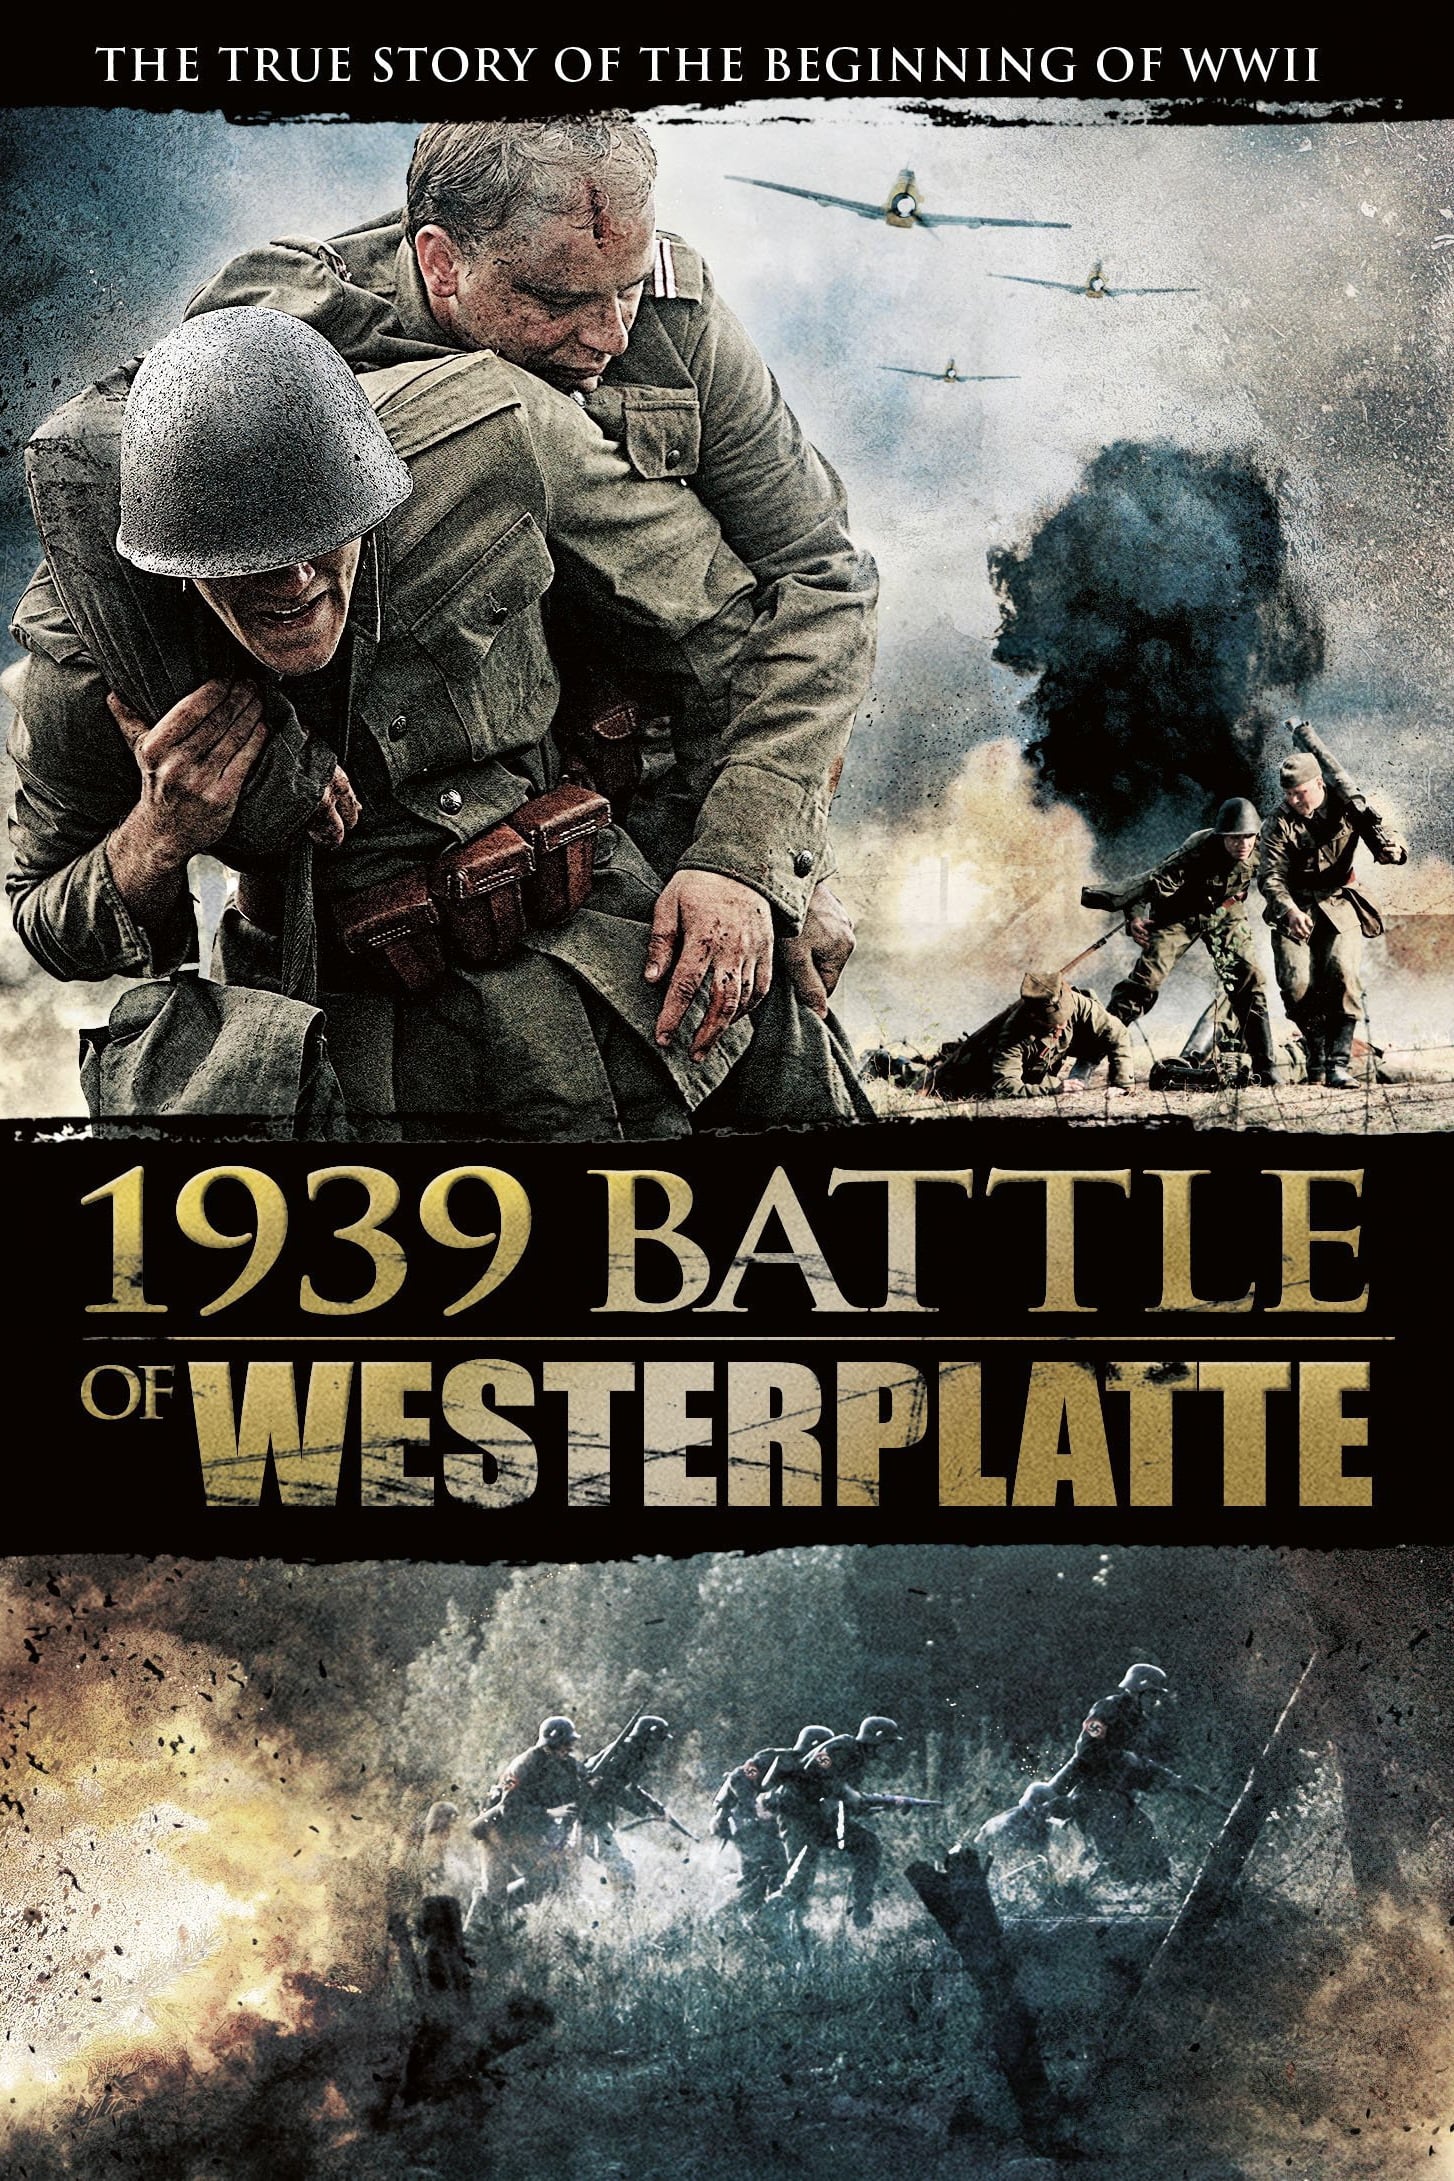 1939 Battlefield Westerplatte